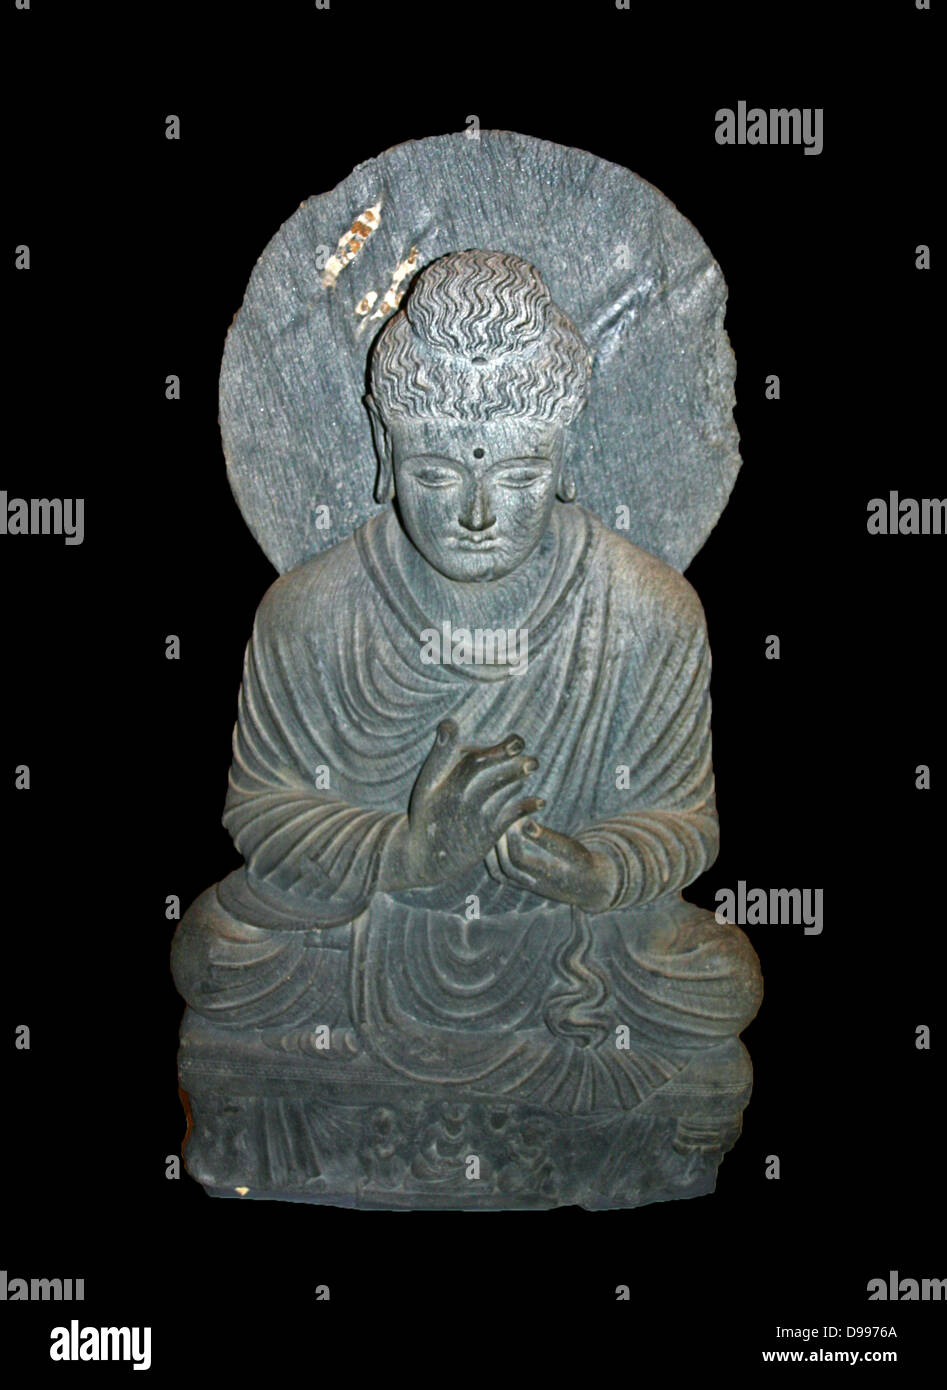 Buda sentado de Gandhara, le muestra como un maestro. Pakistán, acerca de 2ª - 3ª siglo D.C. Foto de stock